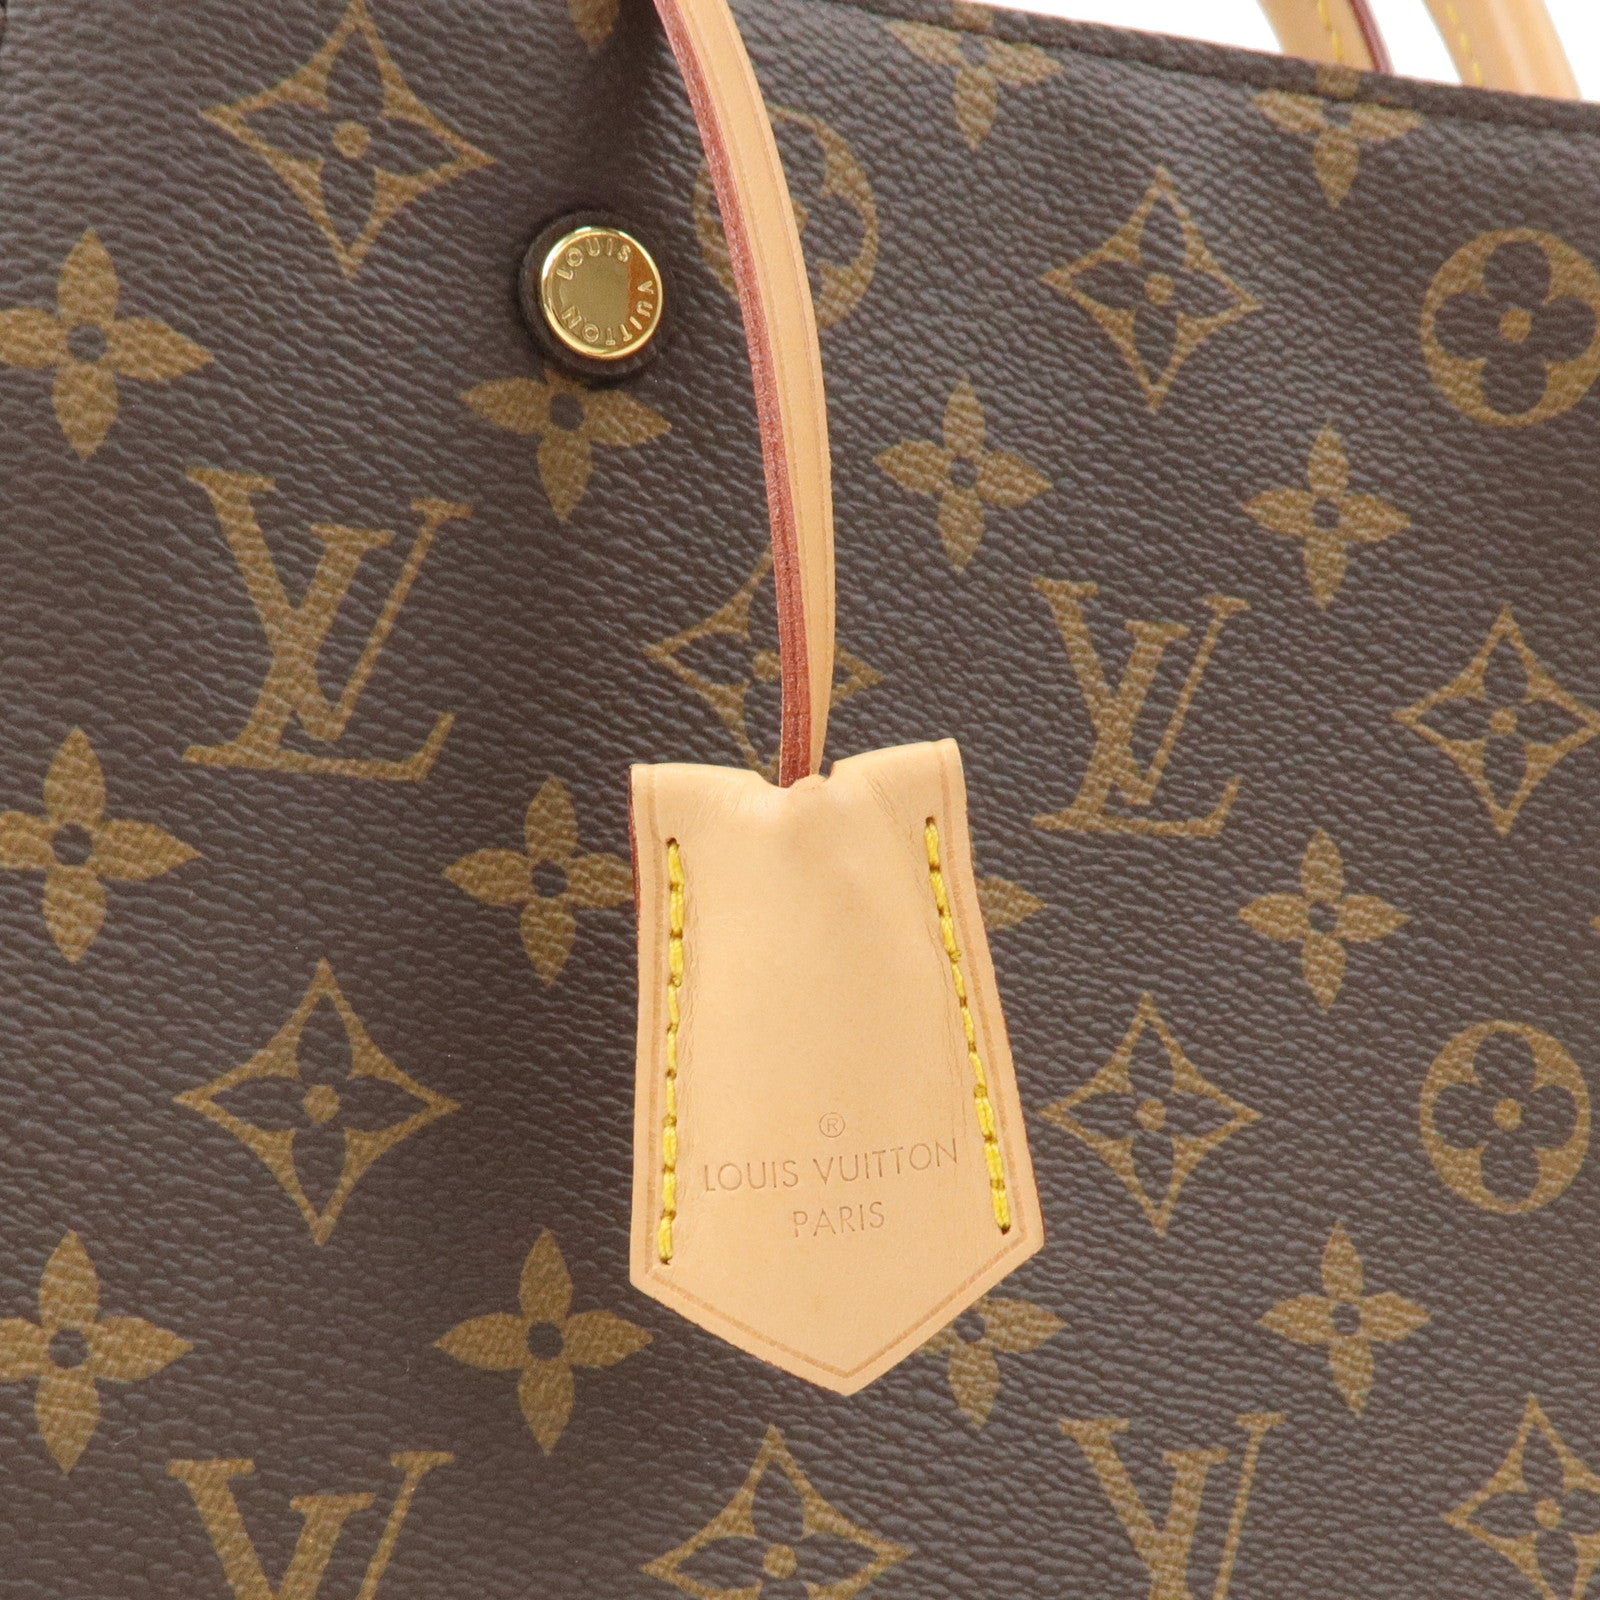 Shop Louis Vuitton MONTAIGNE Montaigne bb (M41055) by